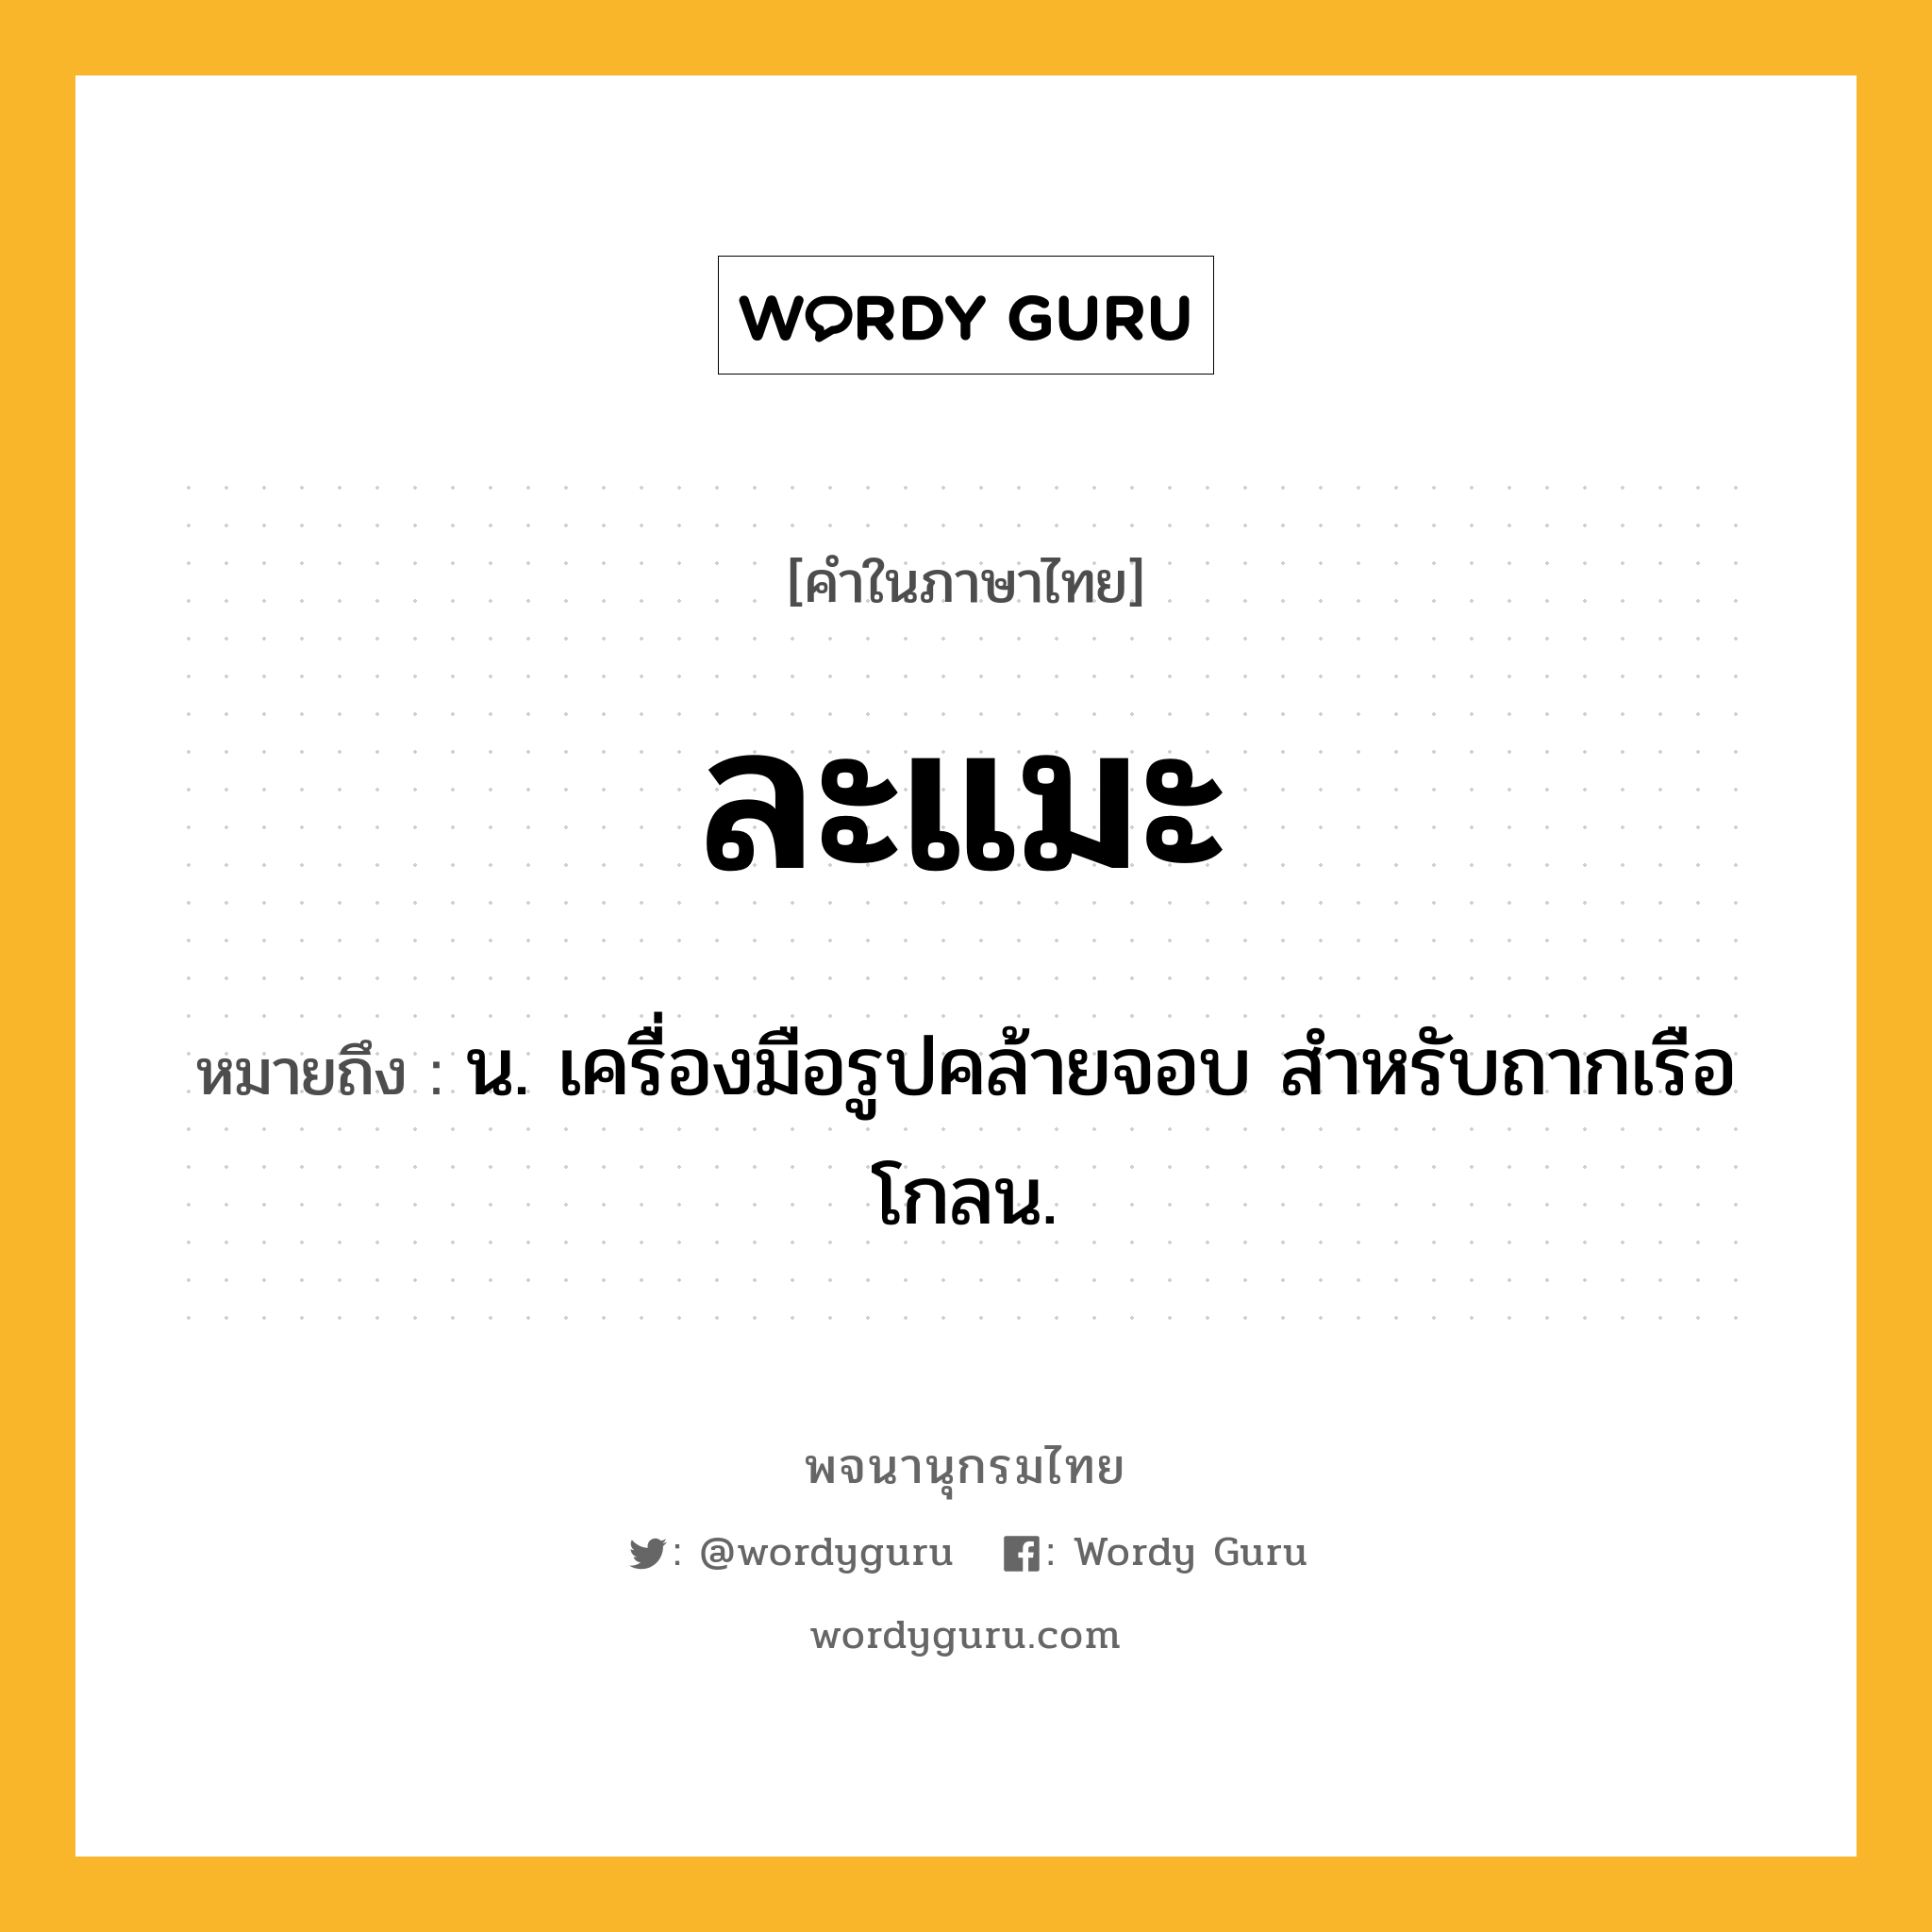 ละแมะ ความหมาย หมายถึงอะไร?, คำในภาษาไทย ละแมะ หมายถึง น. เครื่องมือรูปคล้ายจอบ สําหรับถากเรือโกลน.